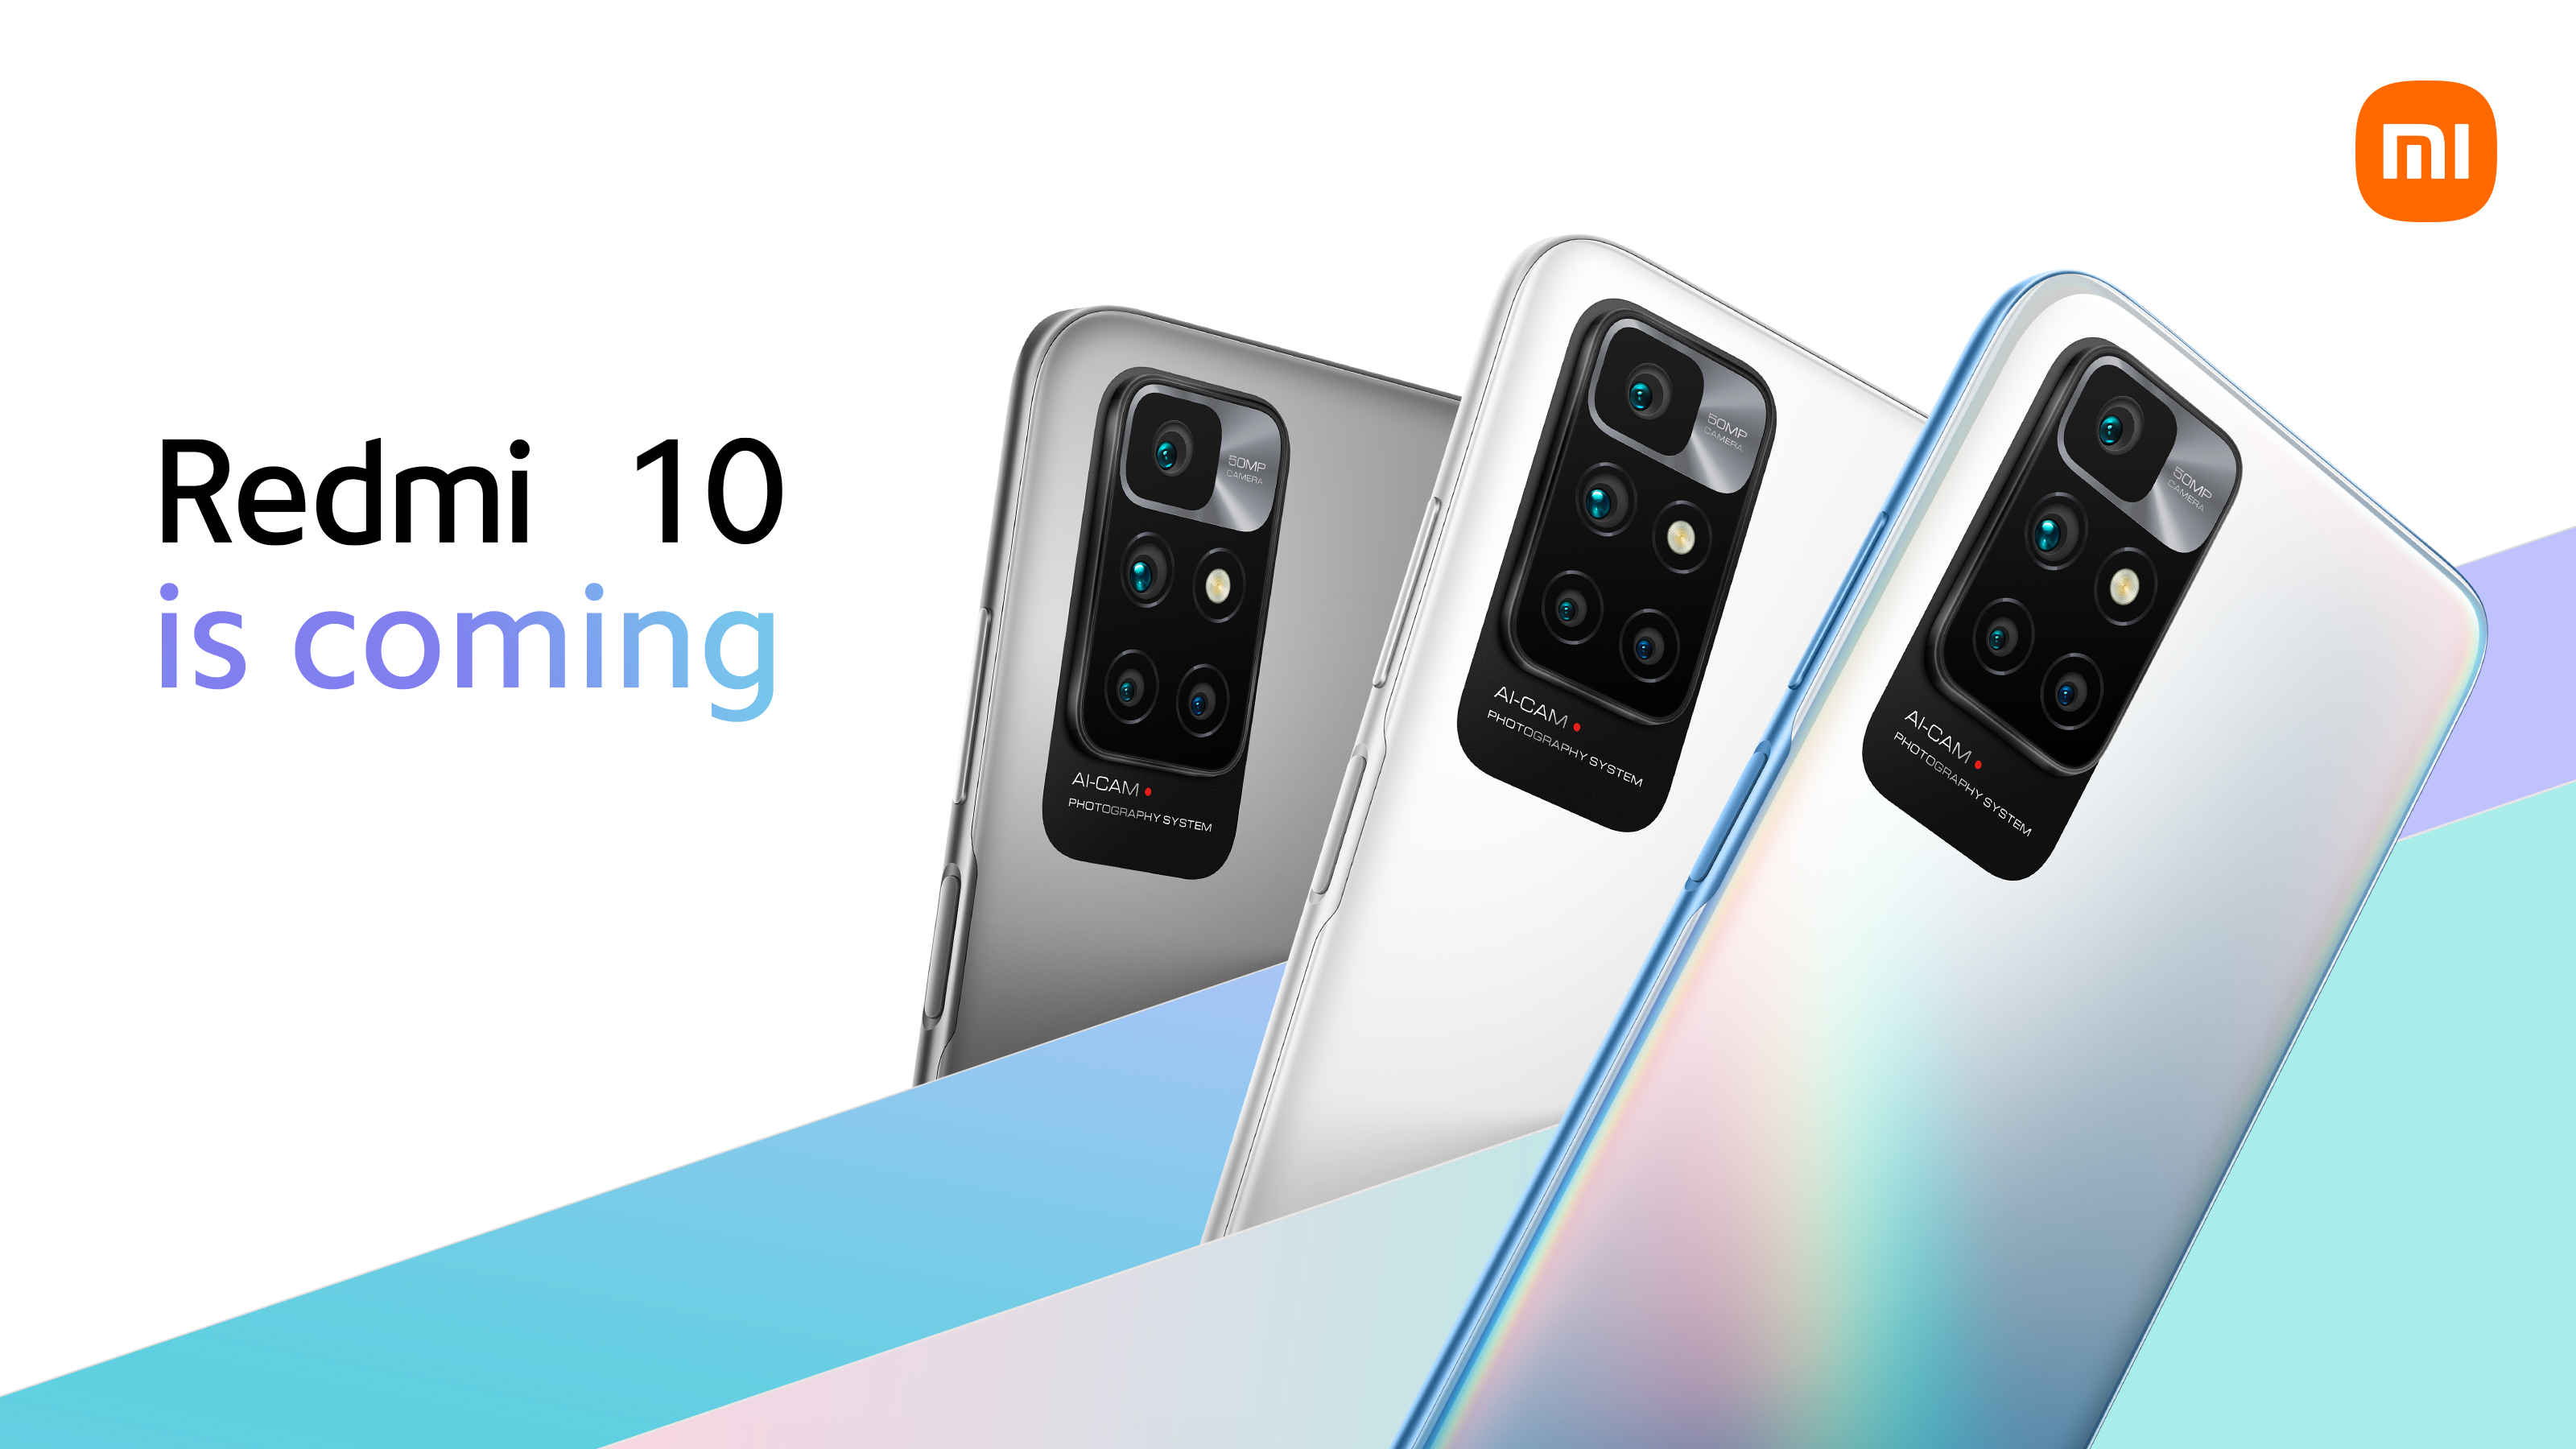 Es ist offiziell: Das Redmi 10 wird das erste Smartphone auf dem Markt sein, das den MediaTek Helio G88 Chip an Bord hat